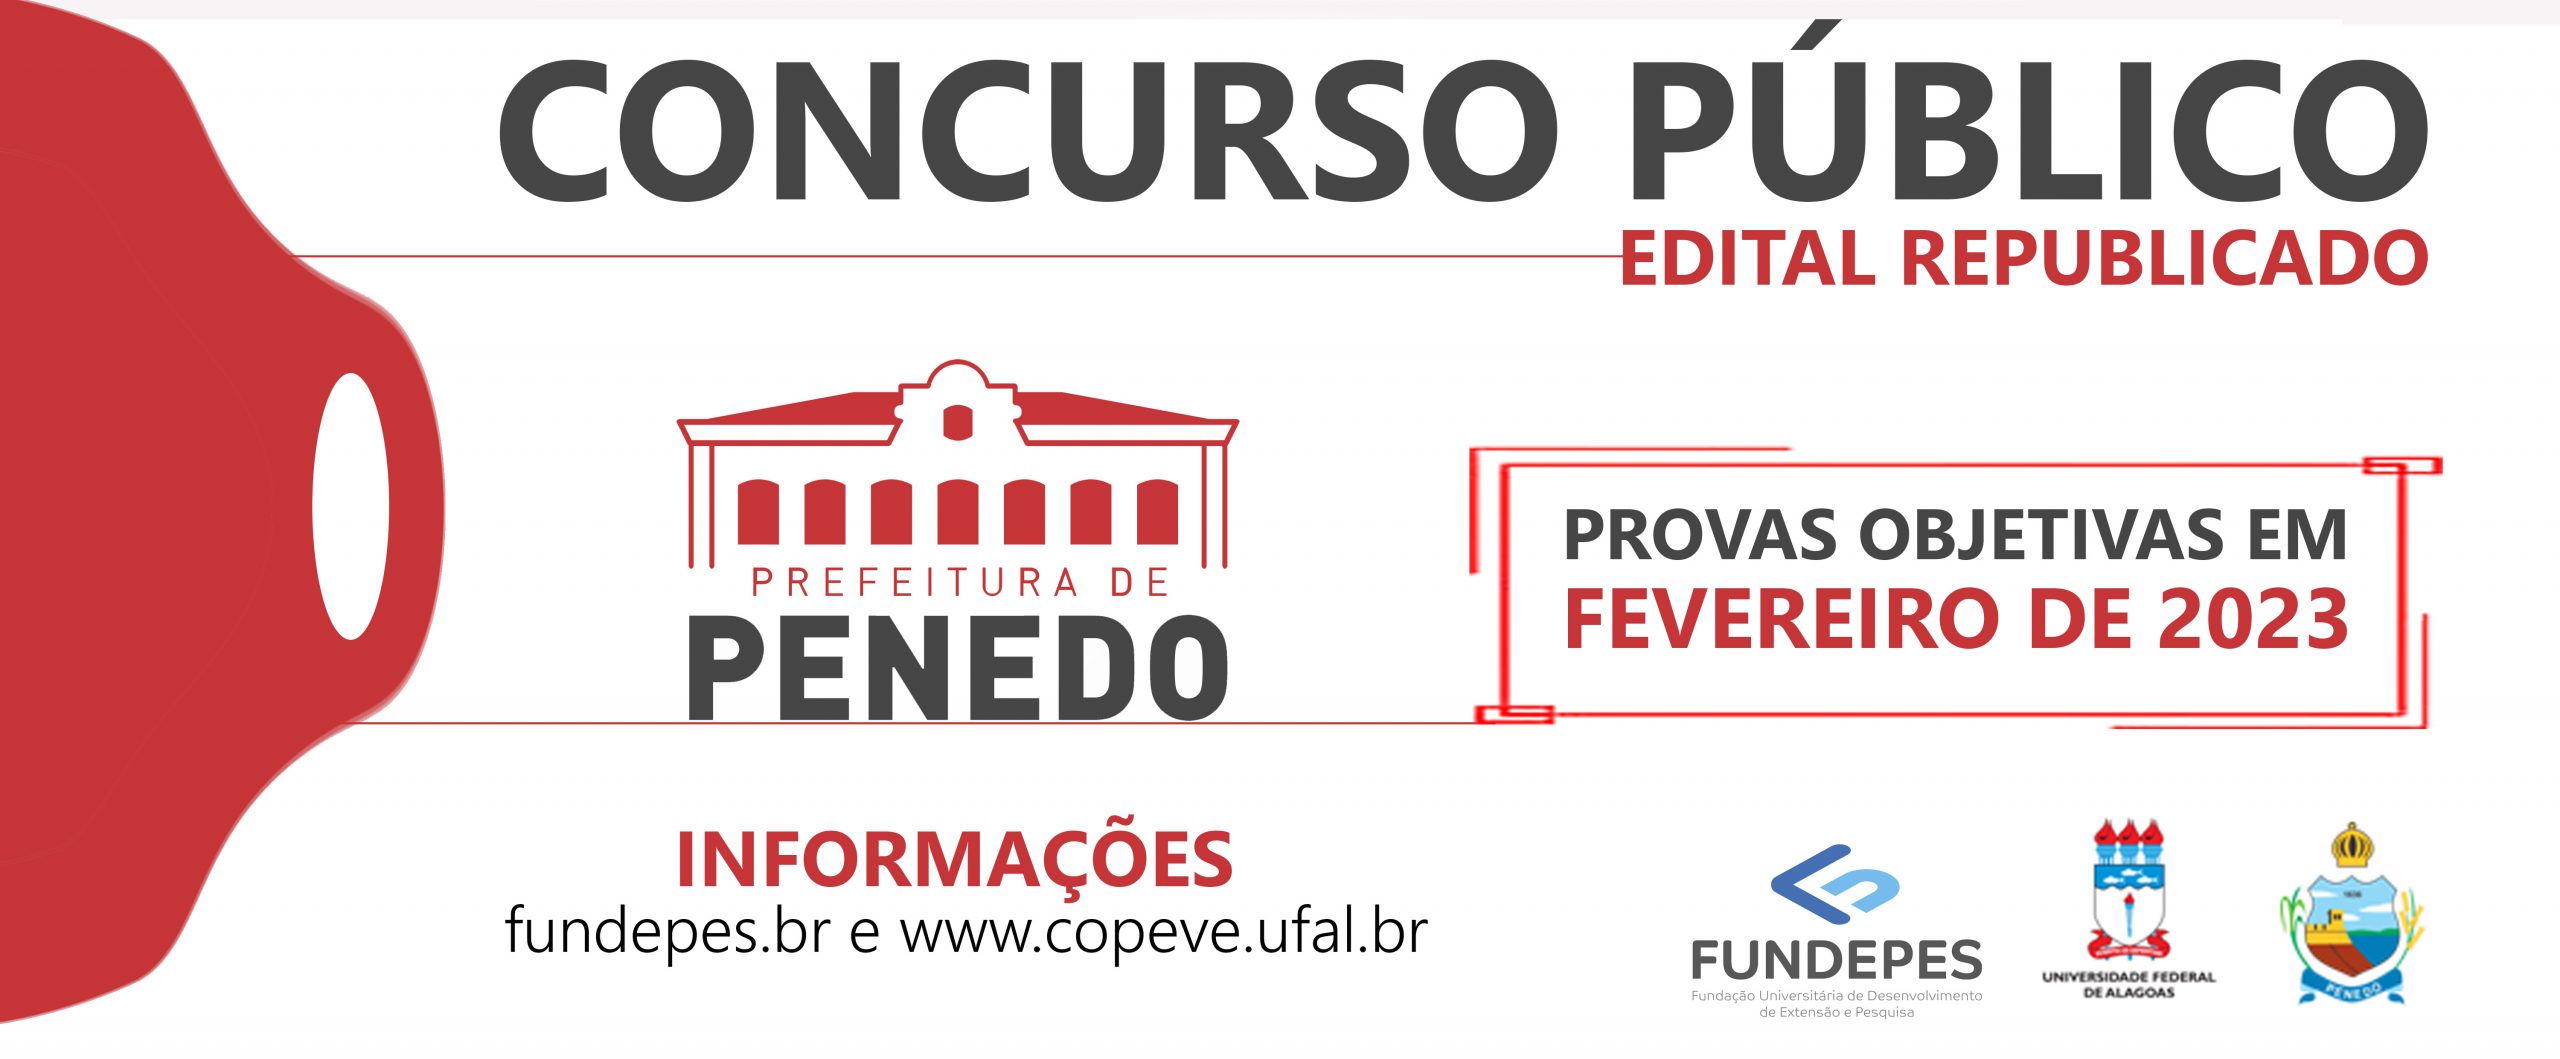 Fundepes anuncia retomada do concurso público para Prefeitura de Penedo